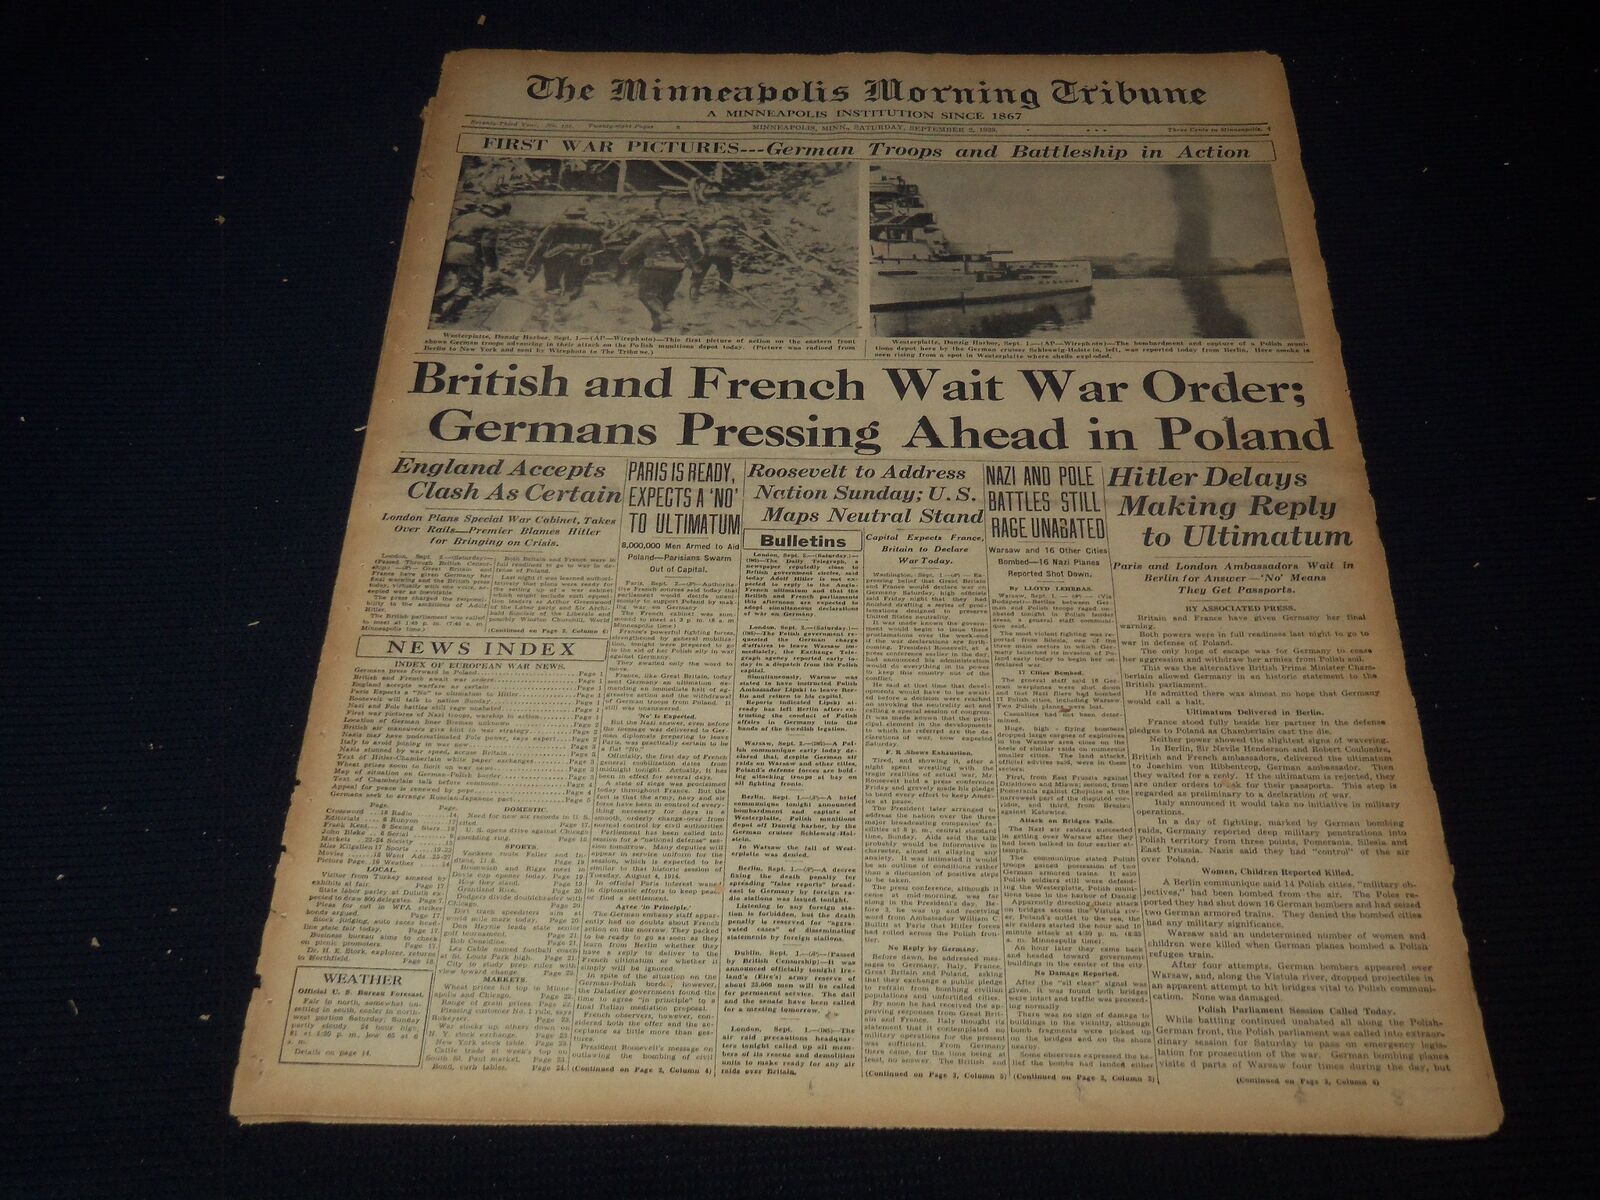 1939 SEPT 2 MINNEAPOLIS MORNING TRIBUNE - BRITISH & FRENCH WAIT WAR - NT 9518